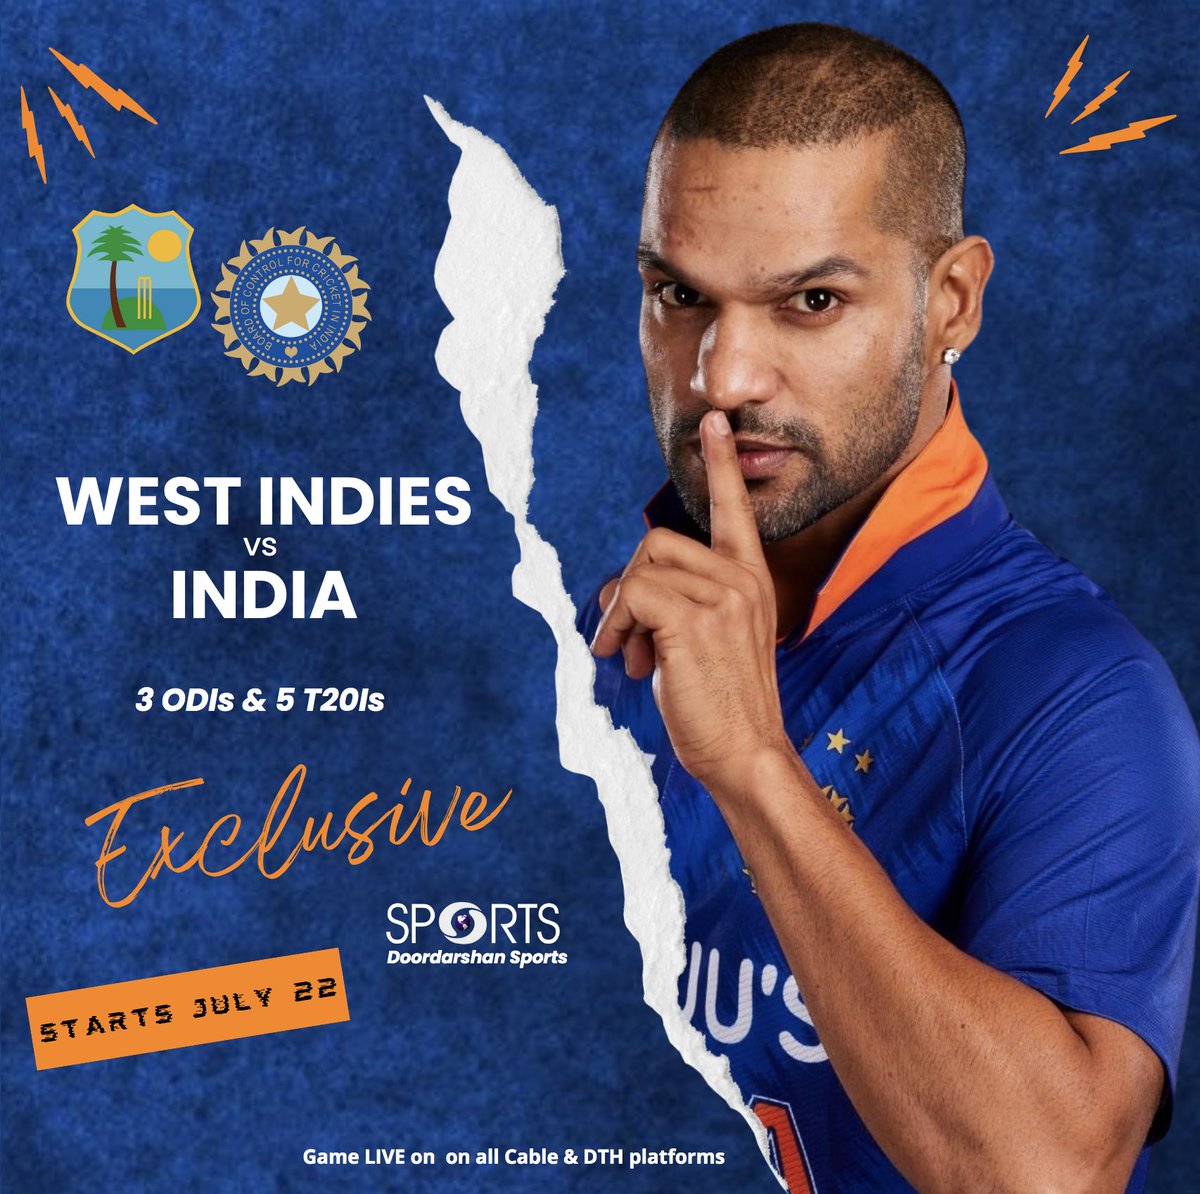 IND WI CANLI Akış: FanCode, DD Spor, 1. ODI Cuma günü başlarken sponsorlar için mücadele ediyor: CANLI izleyin